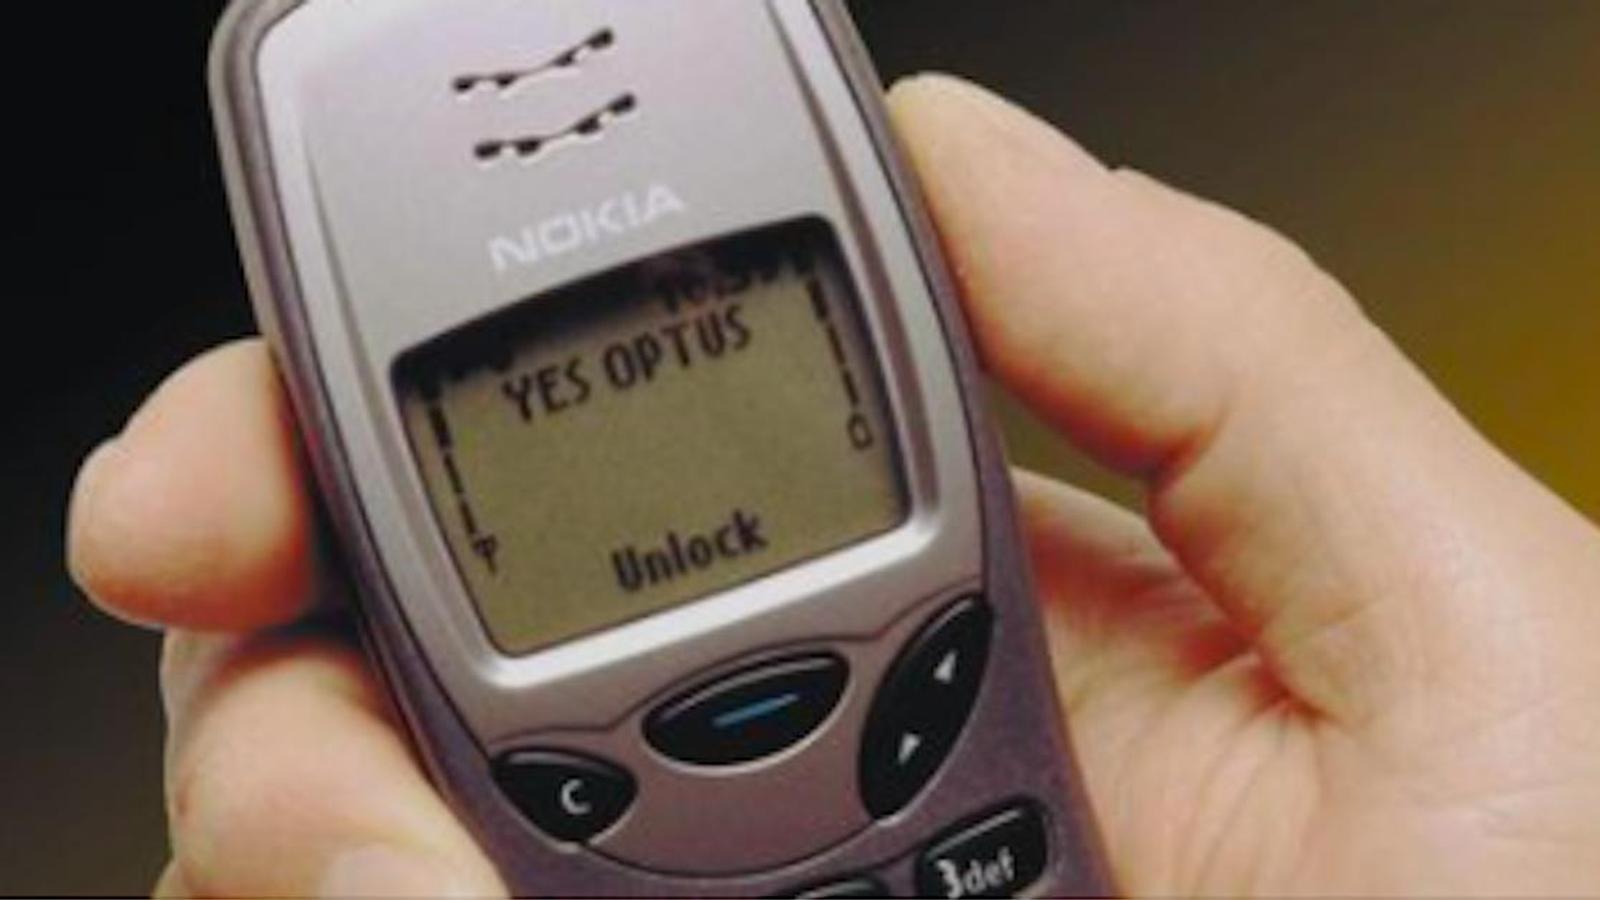 Votre vieux téléphone d'il y a 20 ans pourrait valoir une petite fortune!